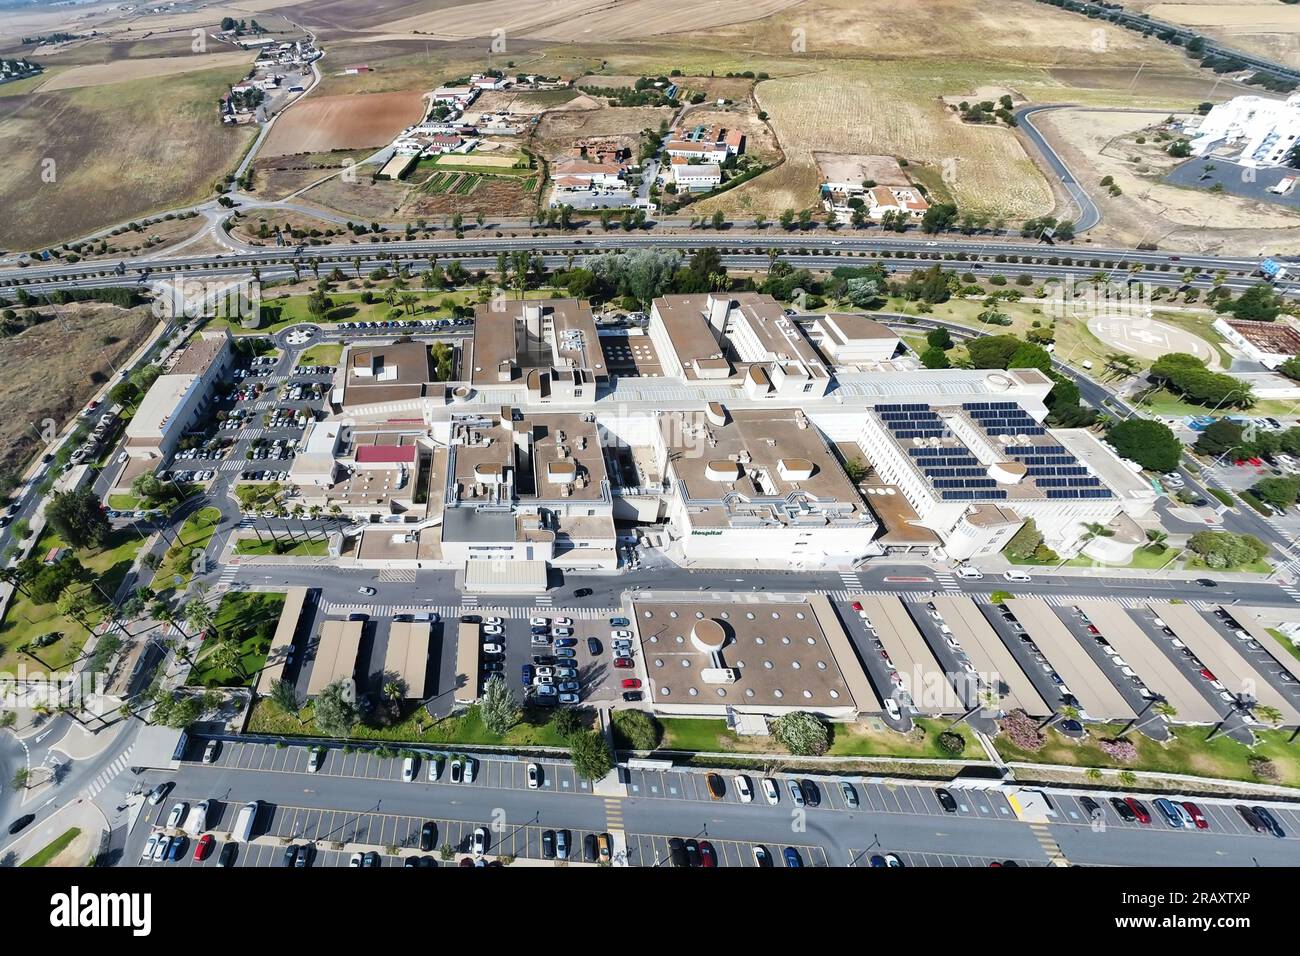 Luftpanorama-Dröhnen-Draufsicht des Juan Ramon Jimenez Universitätsklinikums von der Notfallseite, einem öffentlichen Krankenhauskomplex der Andaluser Stockfoto